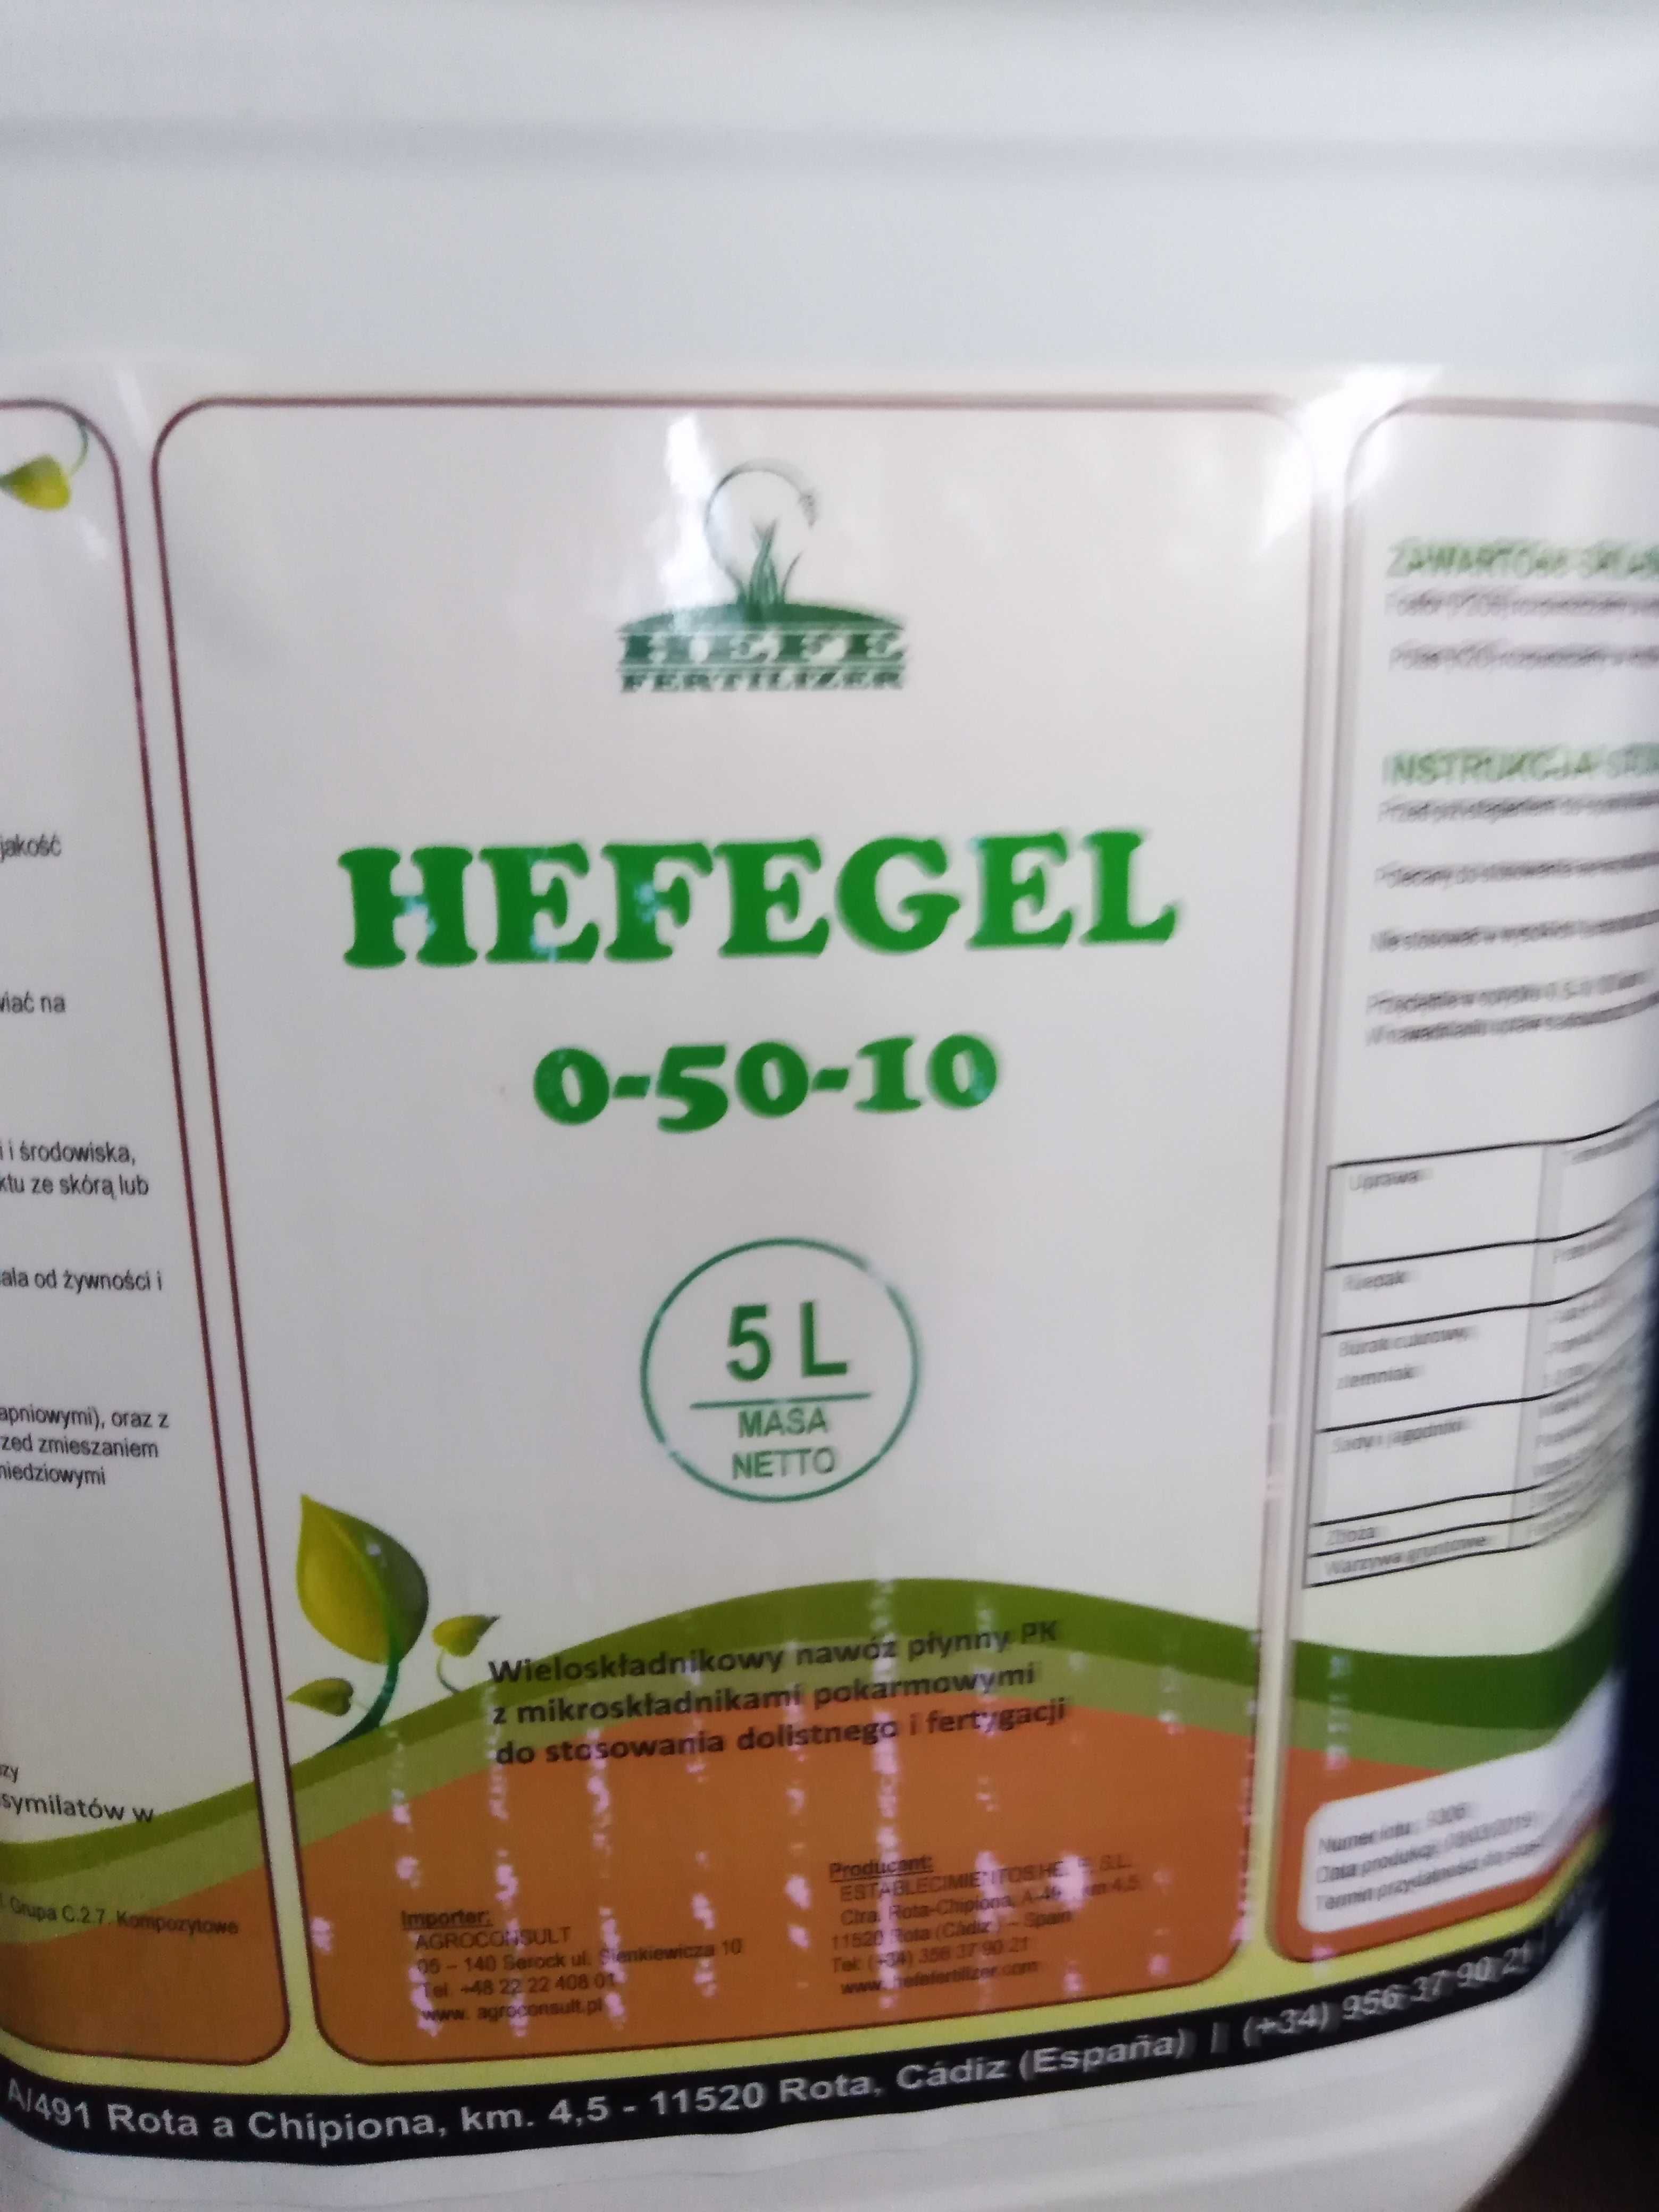 HEFEGEL, Żel Fosforowy PK 50-10, Fosforan w płynie, dolistny 5L/5ha